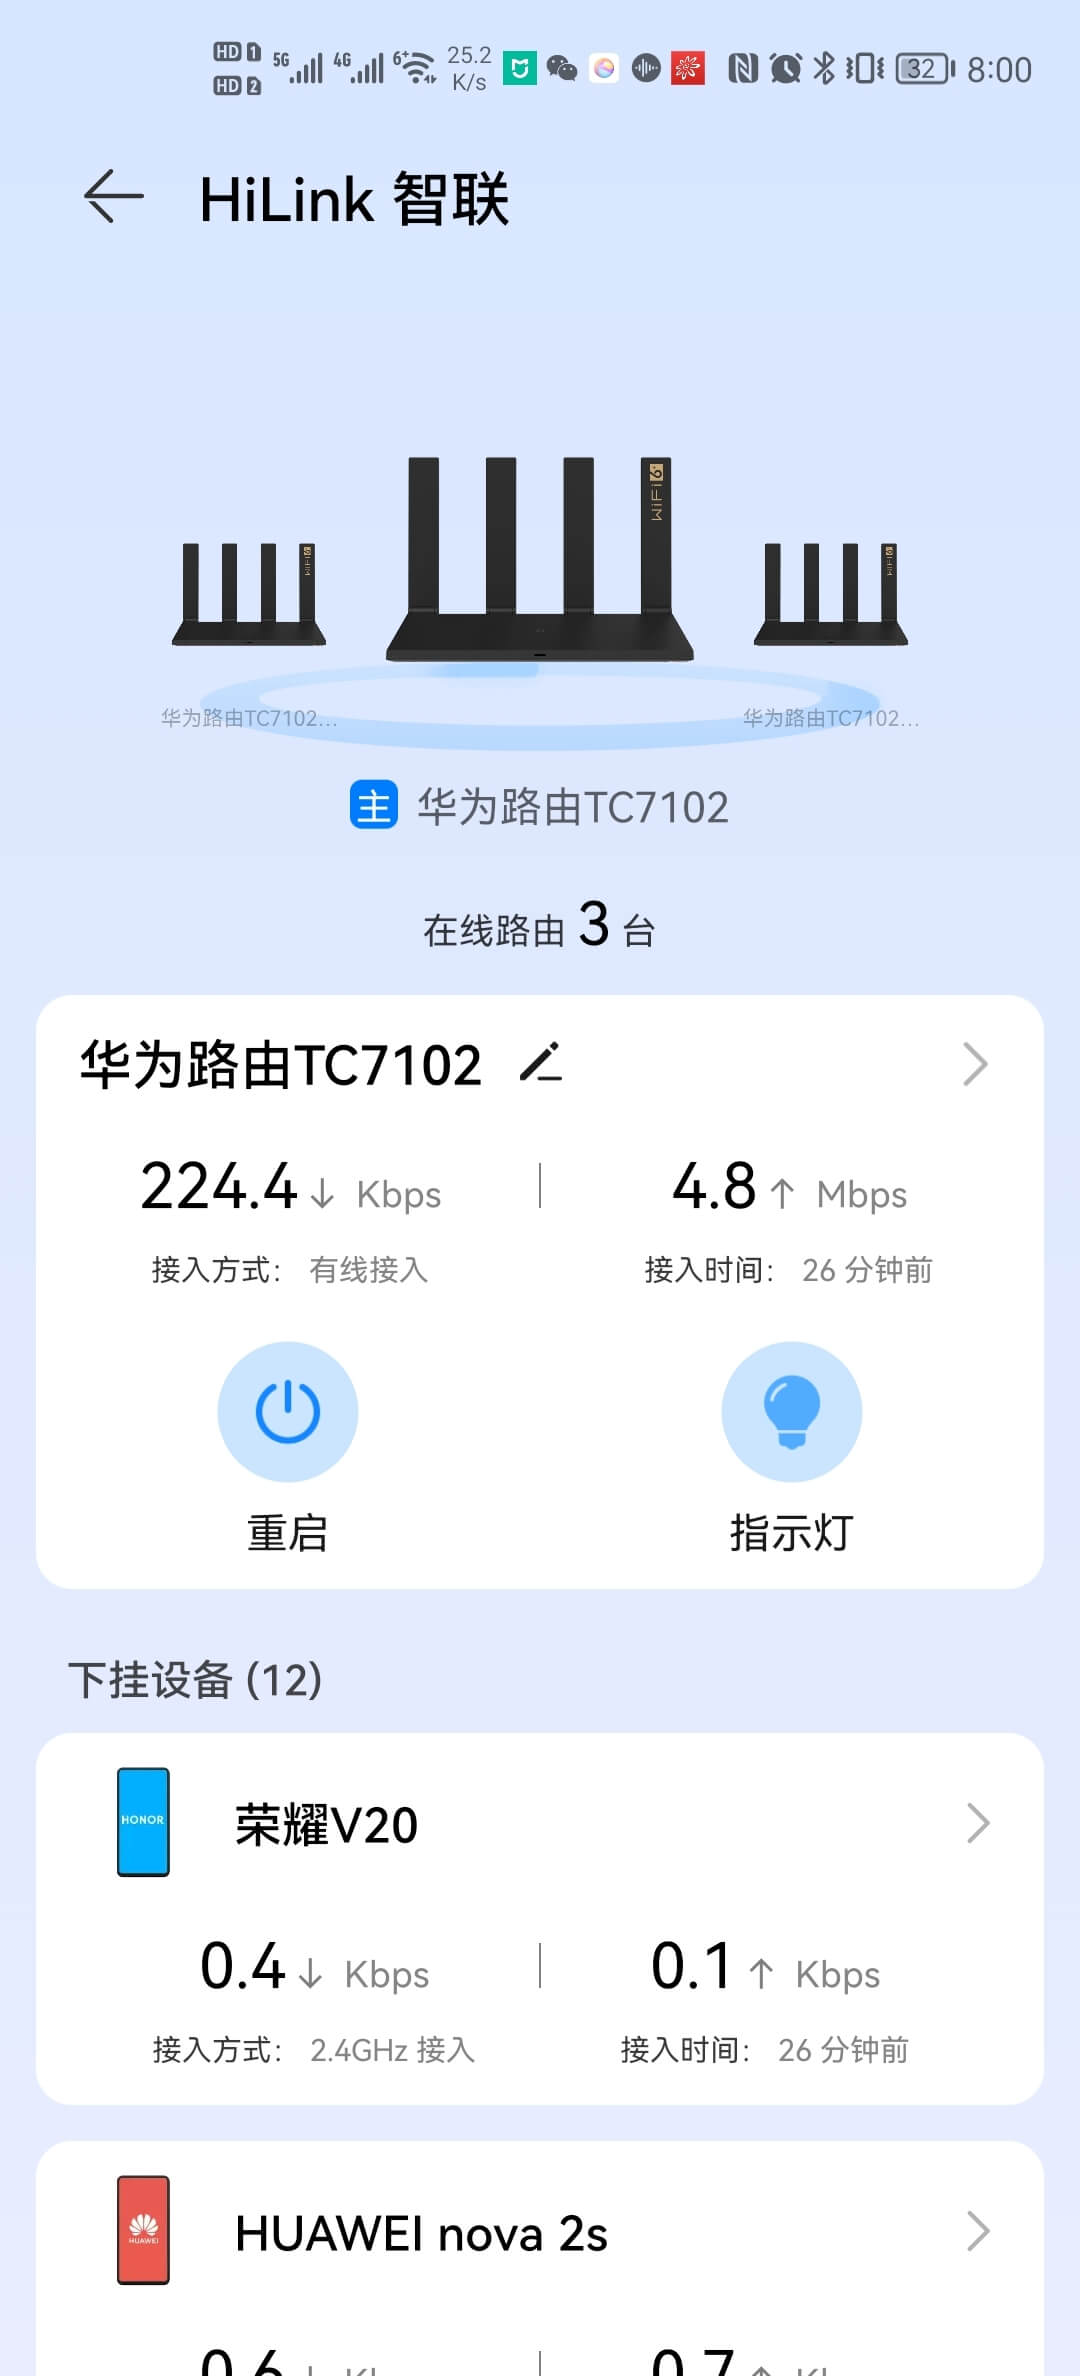 华为TC7102电信版53固件10.0.5.53